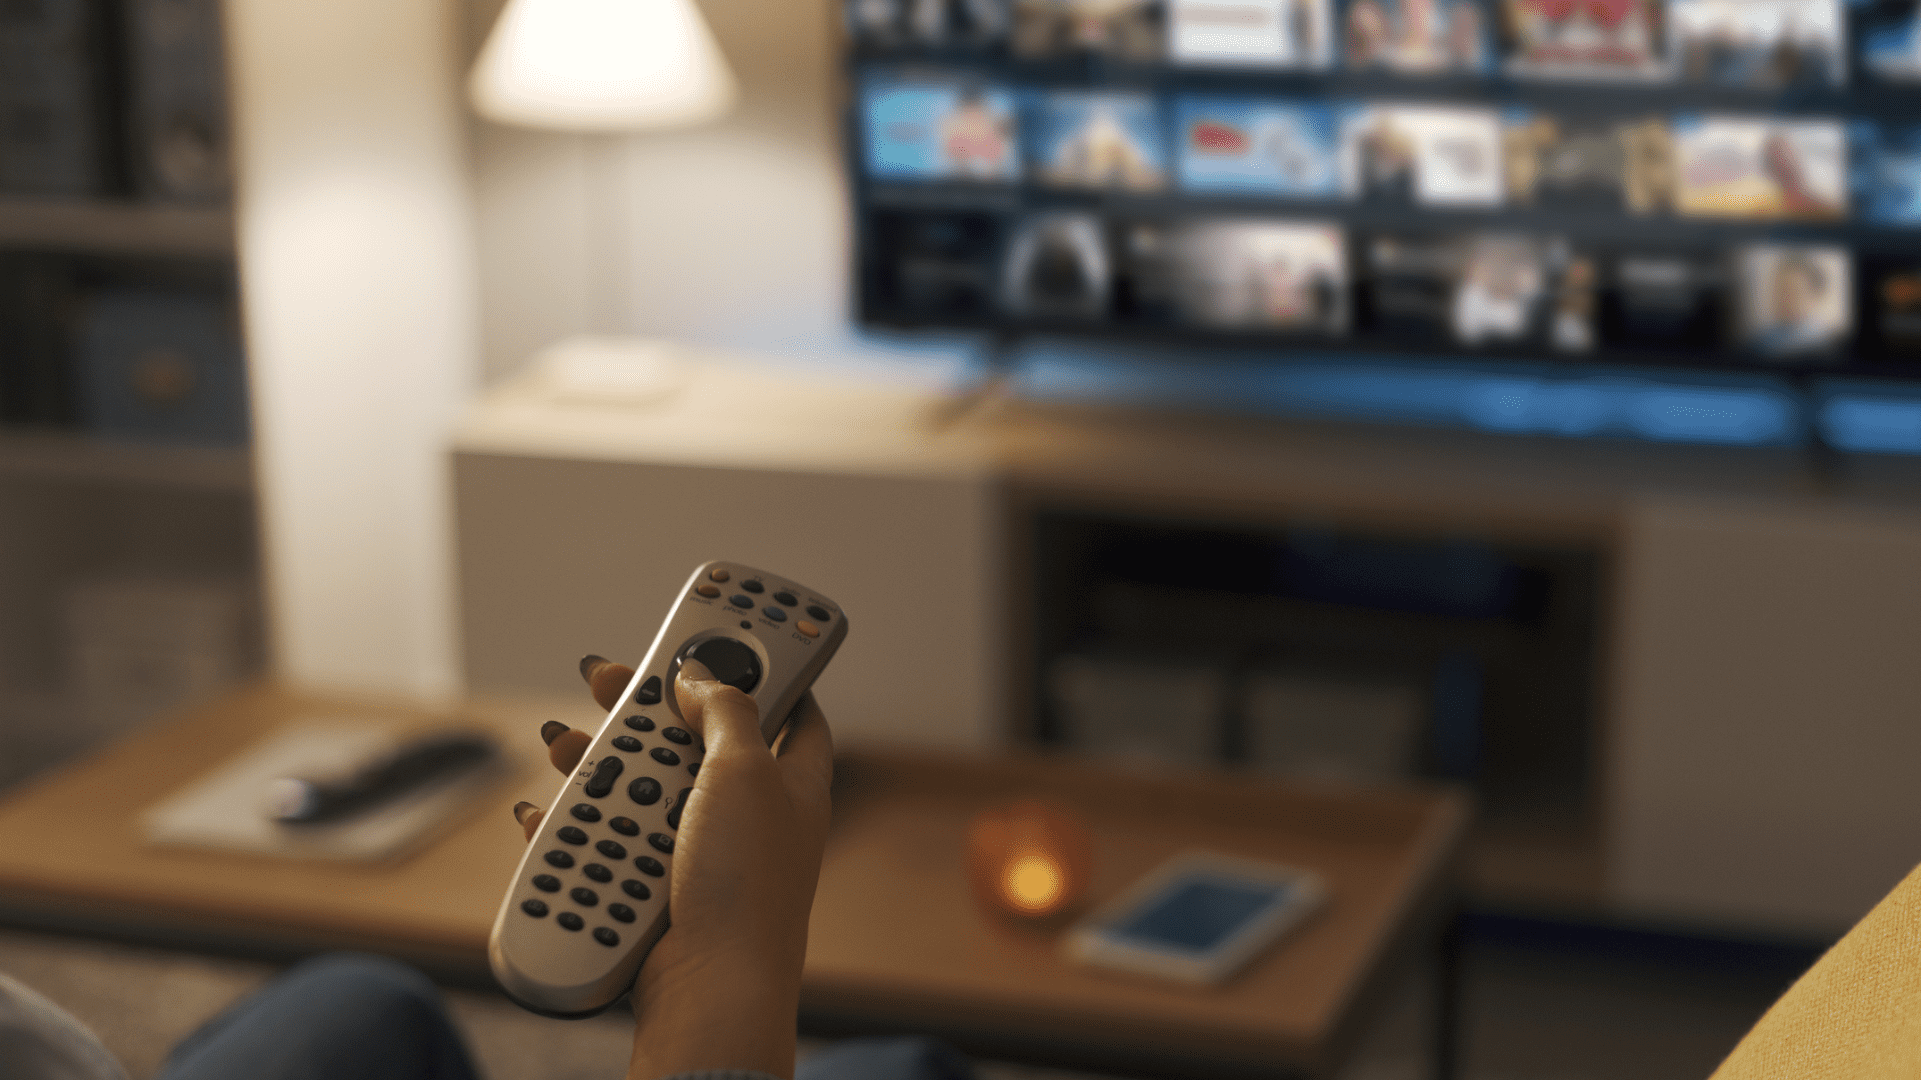 Nesta imagem podemos ver uma pessoa segurando um controle remoto enquanto assiste publicidade na TV aberta.